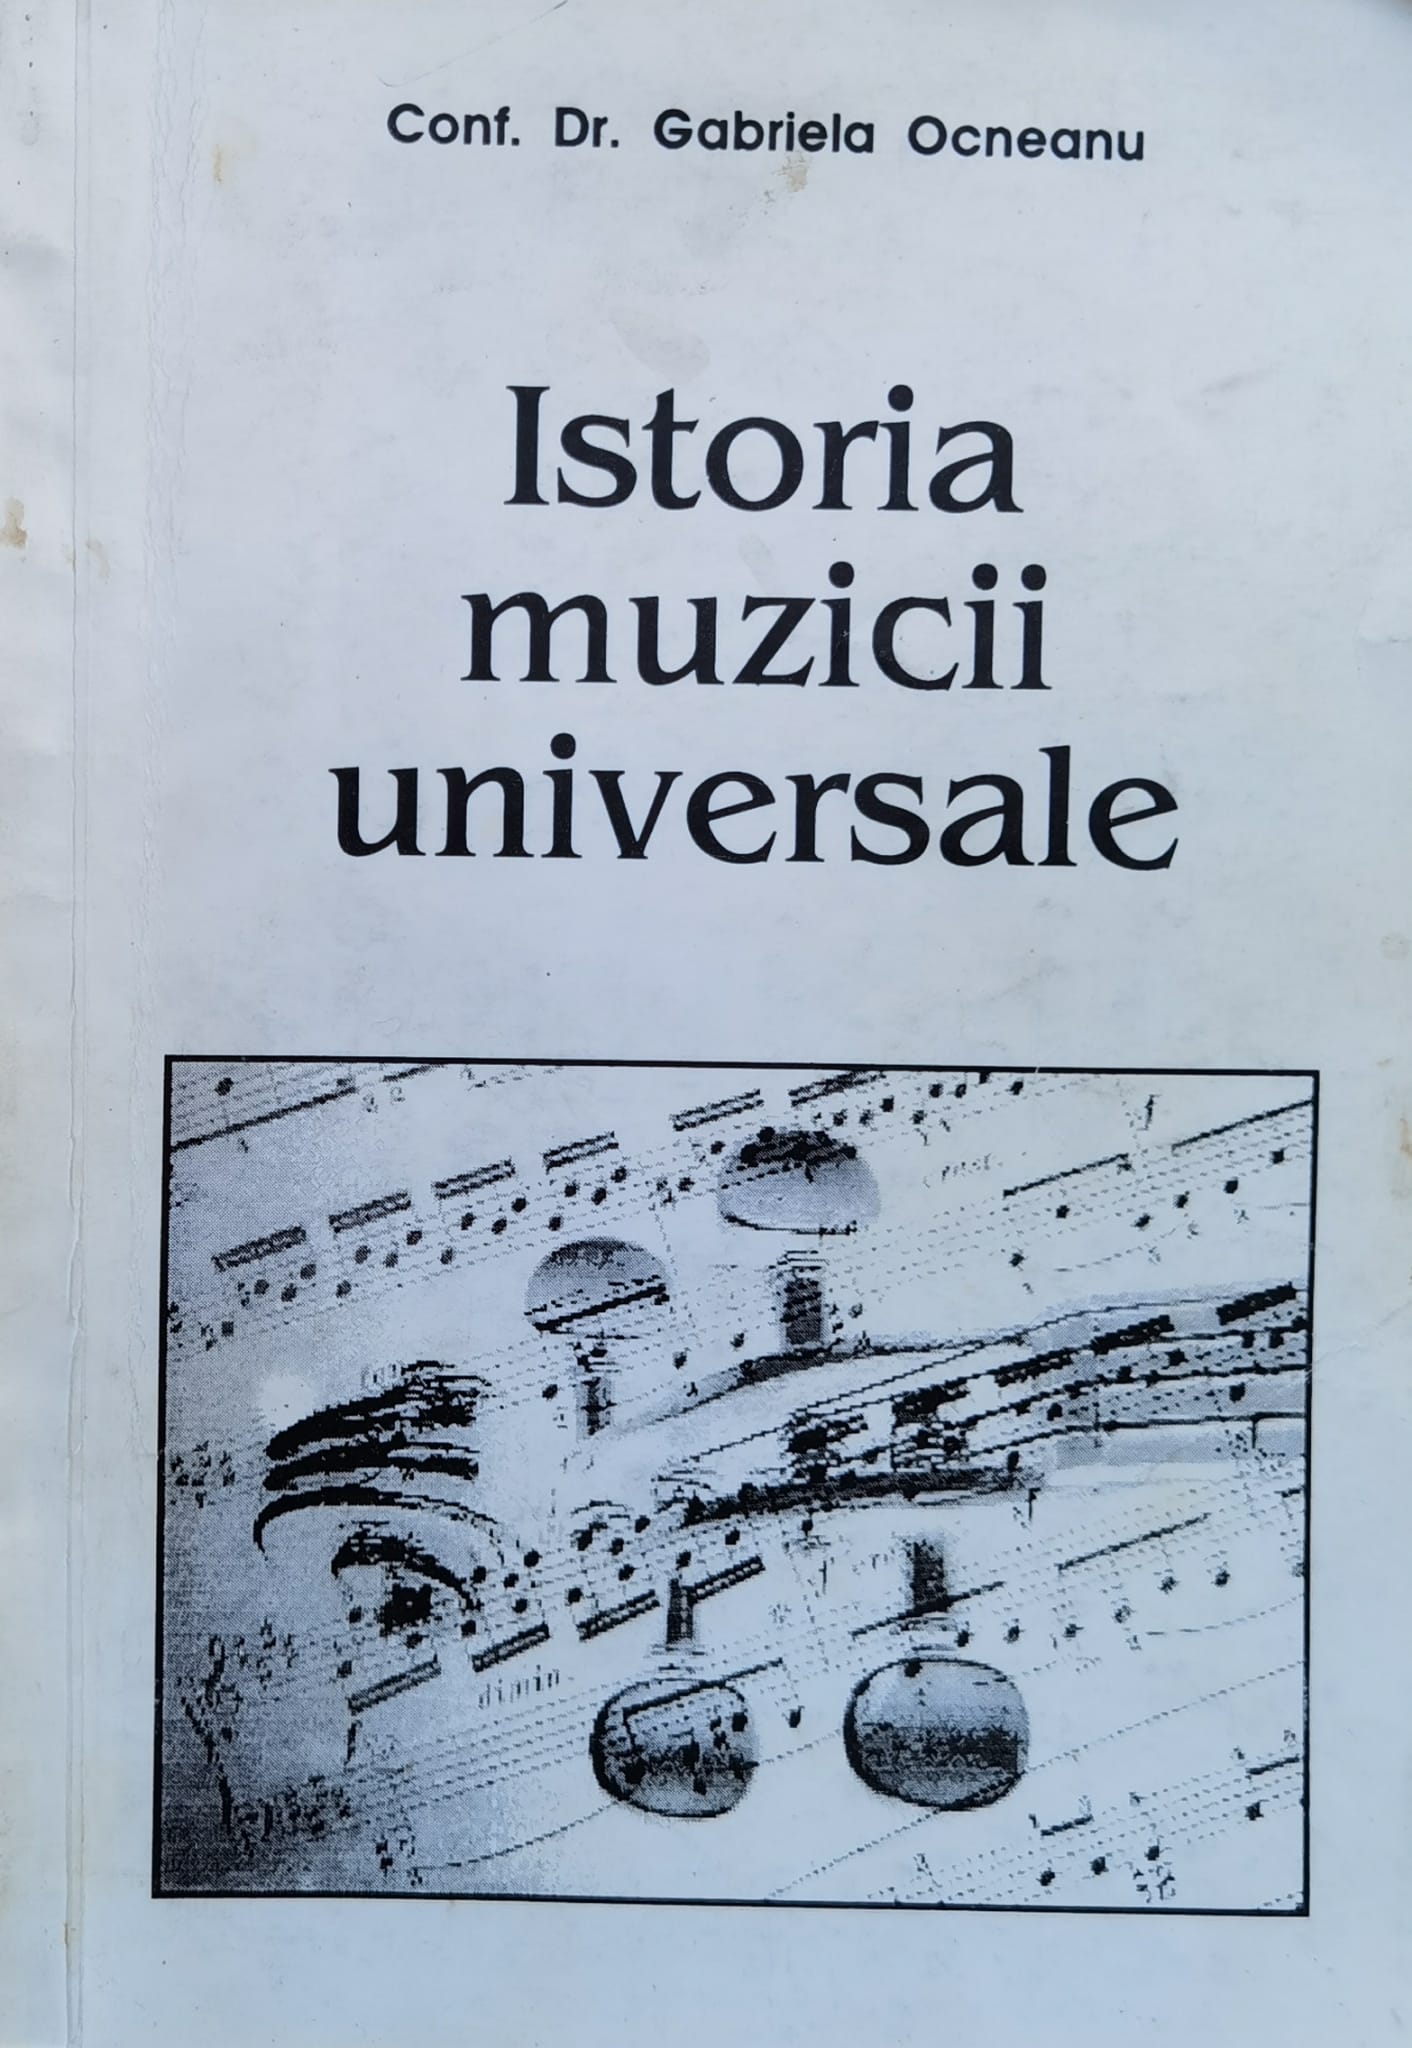 istoria muzicii universale vol. 1                                                                    gabriela ocneanu                                                                                    